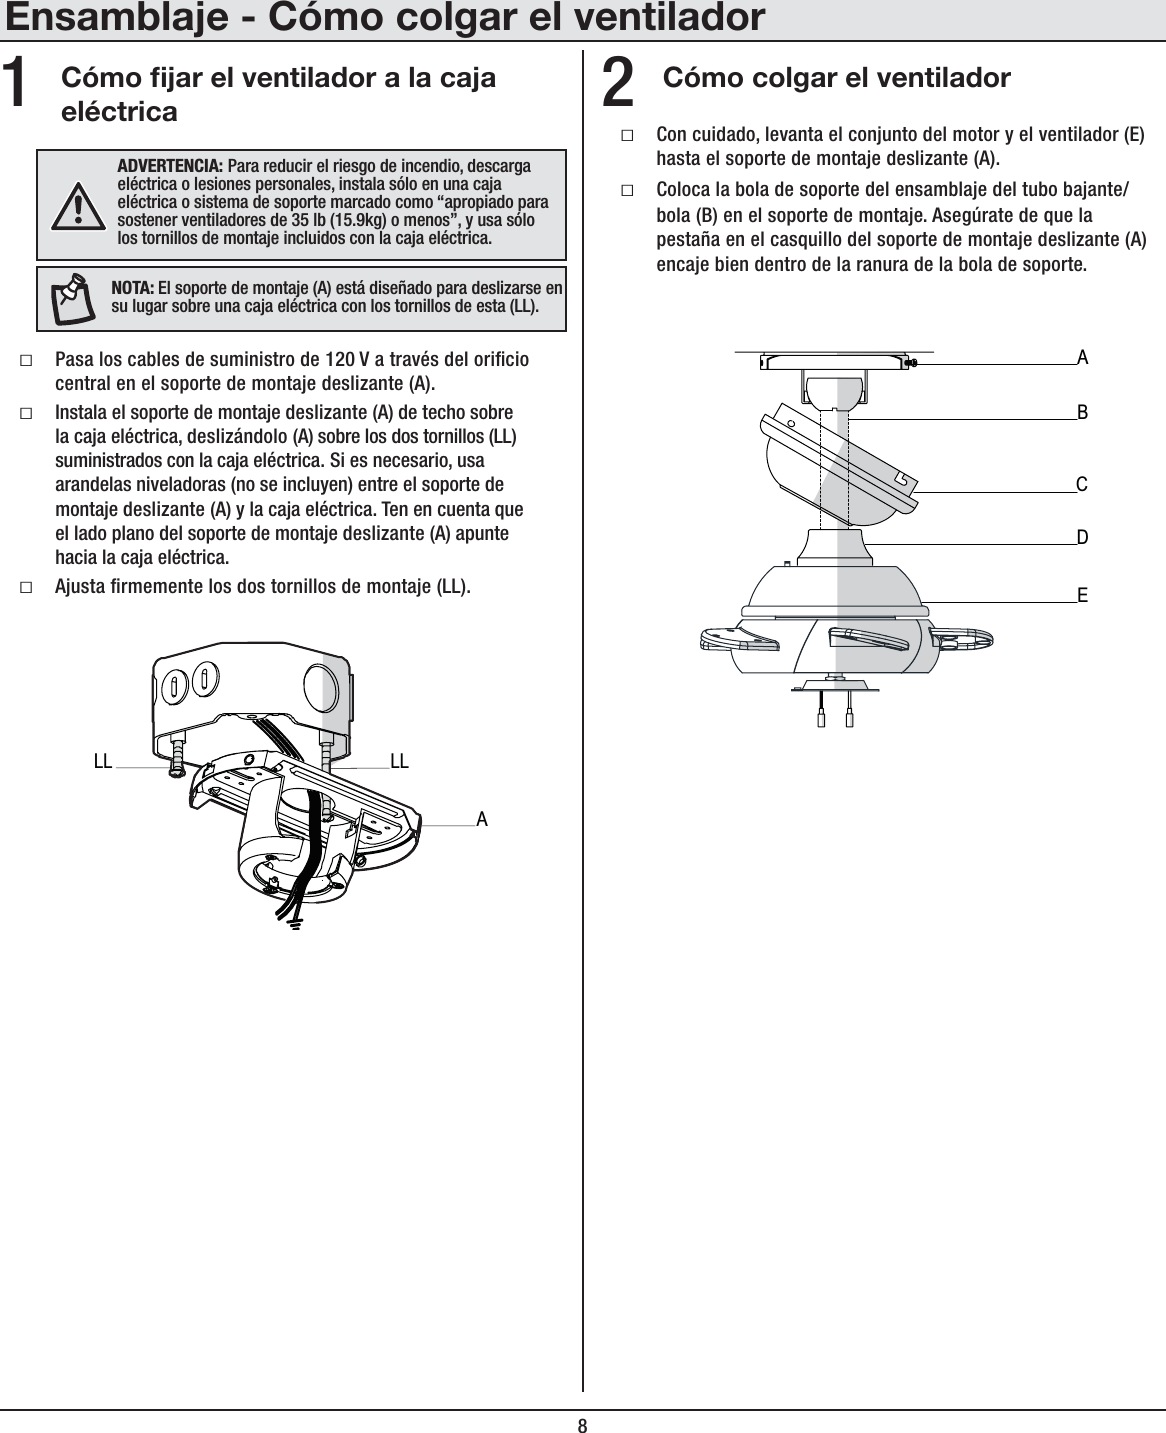 8Ensamblaje - Cómo colgar el ventiladorCómo jar el ventilador a la caja eléctricaCómo colgar el ventiladorƑPasa los cables de suministro de 120 V a través del oricio central en el soporte de montaje deslizante (A).ƑInstala el soporte de montaje deslizante (A) de techo sobre la caja eléctrica, deslizándolo (A) sobre los dos tornillos (LL) suministrados con la caja eléctrica. Si es necesario, usa arandelas niveladoras (no se incluyen) entre el soporte de montaje deslizante (A) y la caja eléctrica. Ten en cuenta que el lado plano del soporte de montaje deslizante (A) apunte hacia la caja eléctrica.ƑAjusta rmemente los dos tornillos de montaje (LL).ƑCon cuidado, levanta el conjunto del motor y el ventilador (E) hasta el soporte de montaje deslizante (A).ƑColoca la bola de soporte del ensamblaje del tubo bajante/bola (B) en el soporte de montaje. Asegúrate de que la pestaña en el casquillo del soporte de montaje deslizante (A) encaje bien dentro de la ranura de la bola de soporte.12(+=,9;,5*0(! Para reducir el riesgo de incendio, descarga eléctrica o lesiones personales, instala sólo en una caja eléctrica o sistema de soporte marcado como “apropiado para sostener ventiladores de 35 lb (15.9kg) o menos”, y usa sólo los tornillos de montaje incluidos con la caja eléctrica.56;(!El soporte de montaje (A) está diseñado para deslizarse en su lugar sobre una caja eléctrica con los tornillos de esta (LL).ABECDALLLL